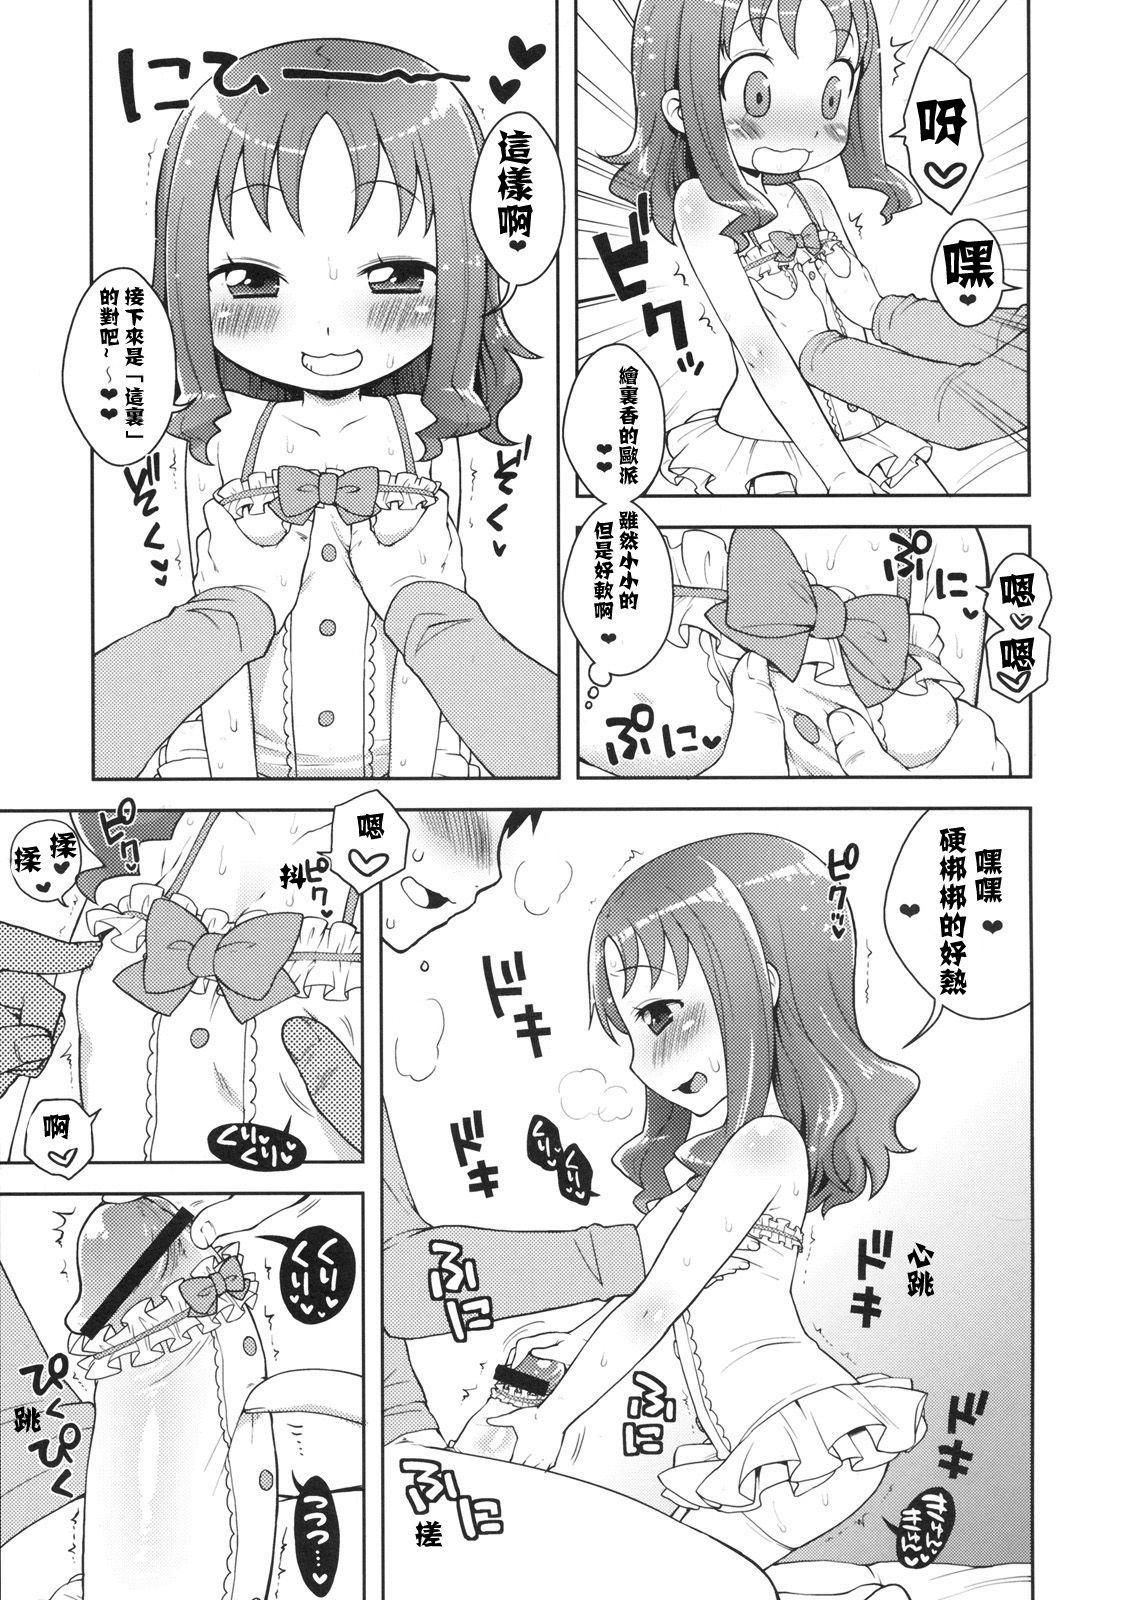 Legs KisekaErika-chan - Heartcatch precure Amateurporn - Page 7